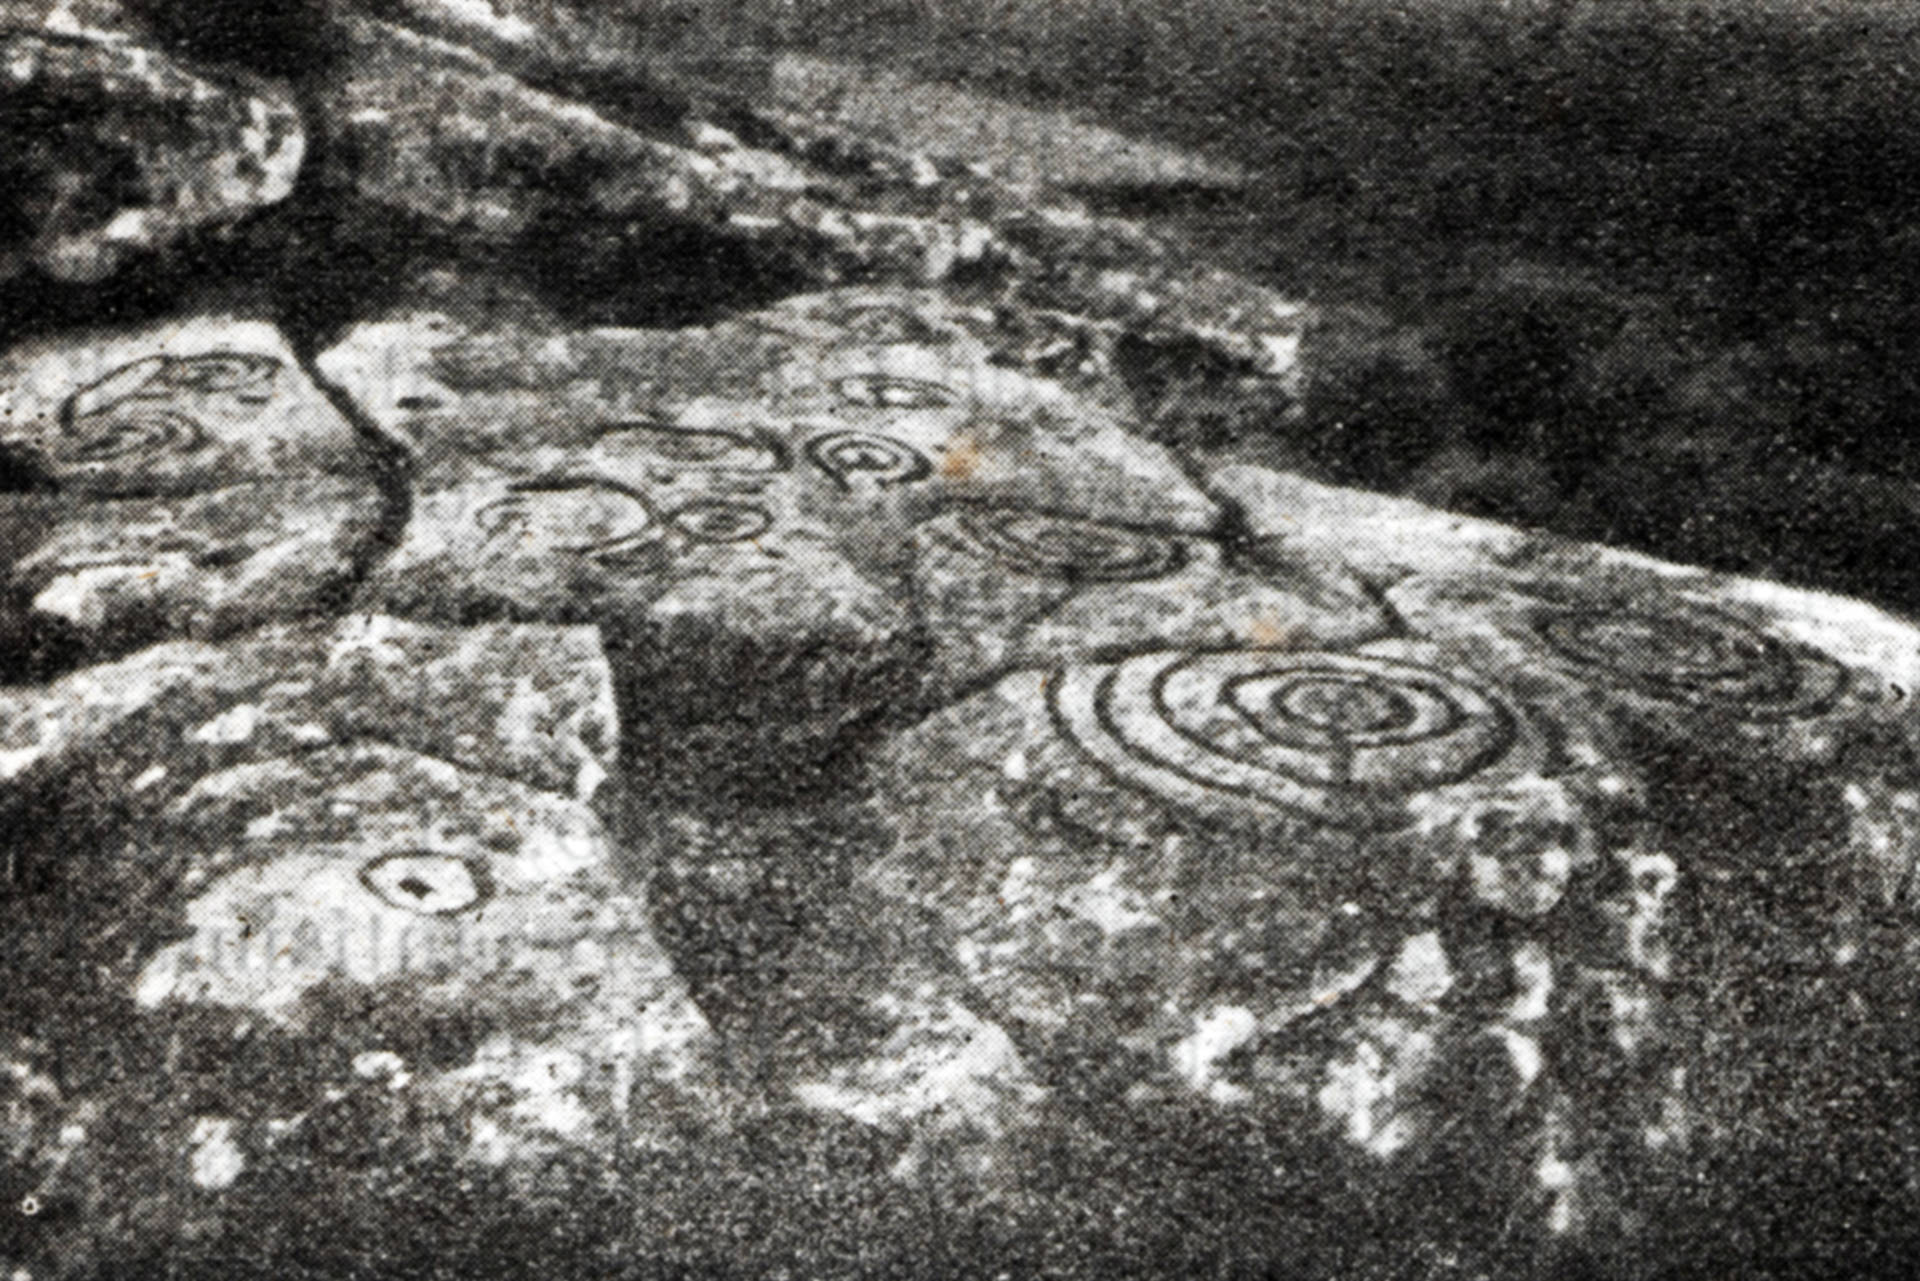 Petroglifo de Oca. Archivo Núñez – Sobrino. Fotografías de Ramón Sobrino Lorenzo - Ruza (1939-1958). Digitalización Colectivo A Rula.